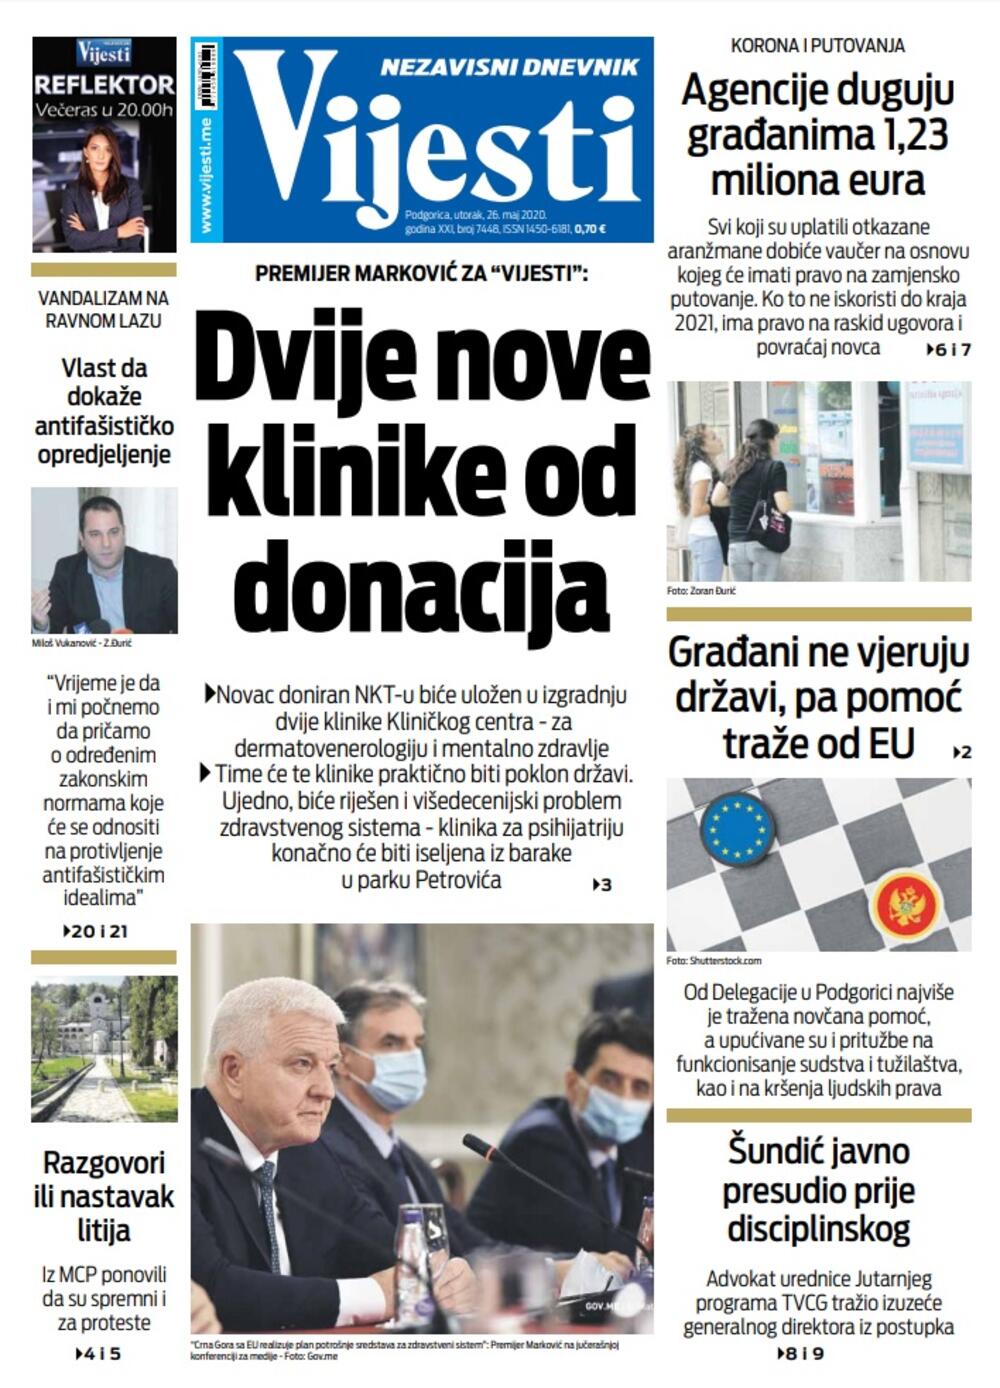 Naslovna strana "Vijesti" za 26. maj 2020., Foto: Vijesti